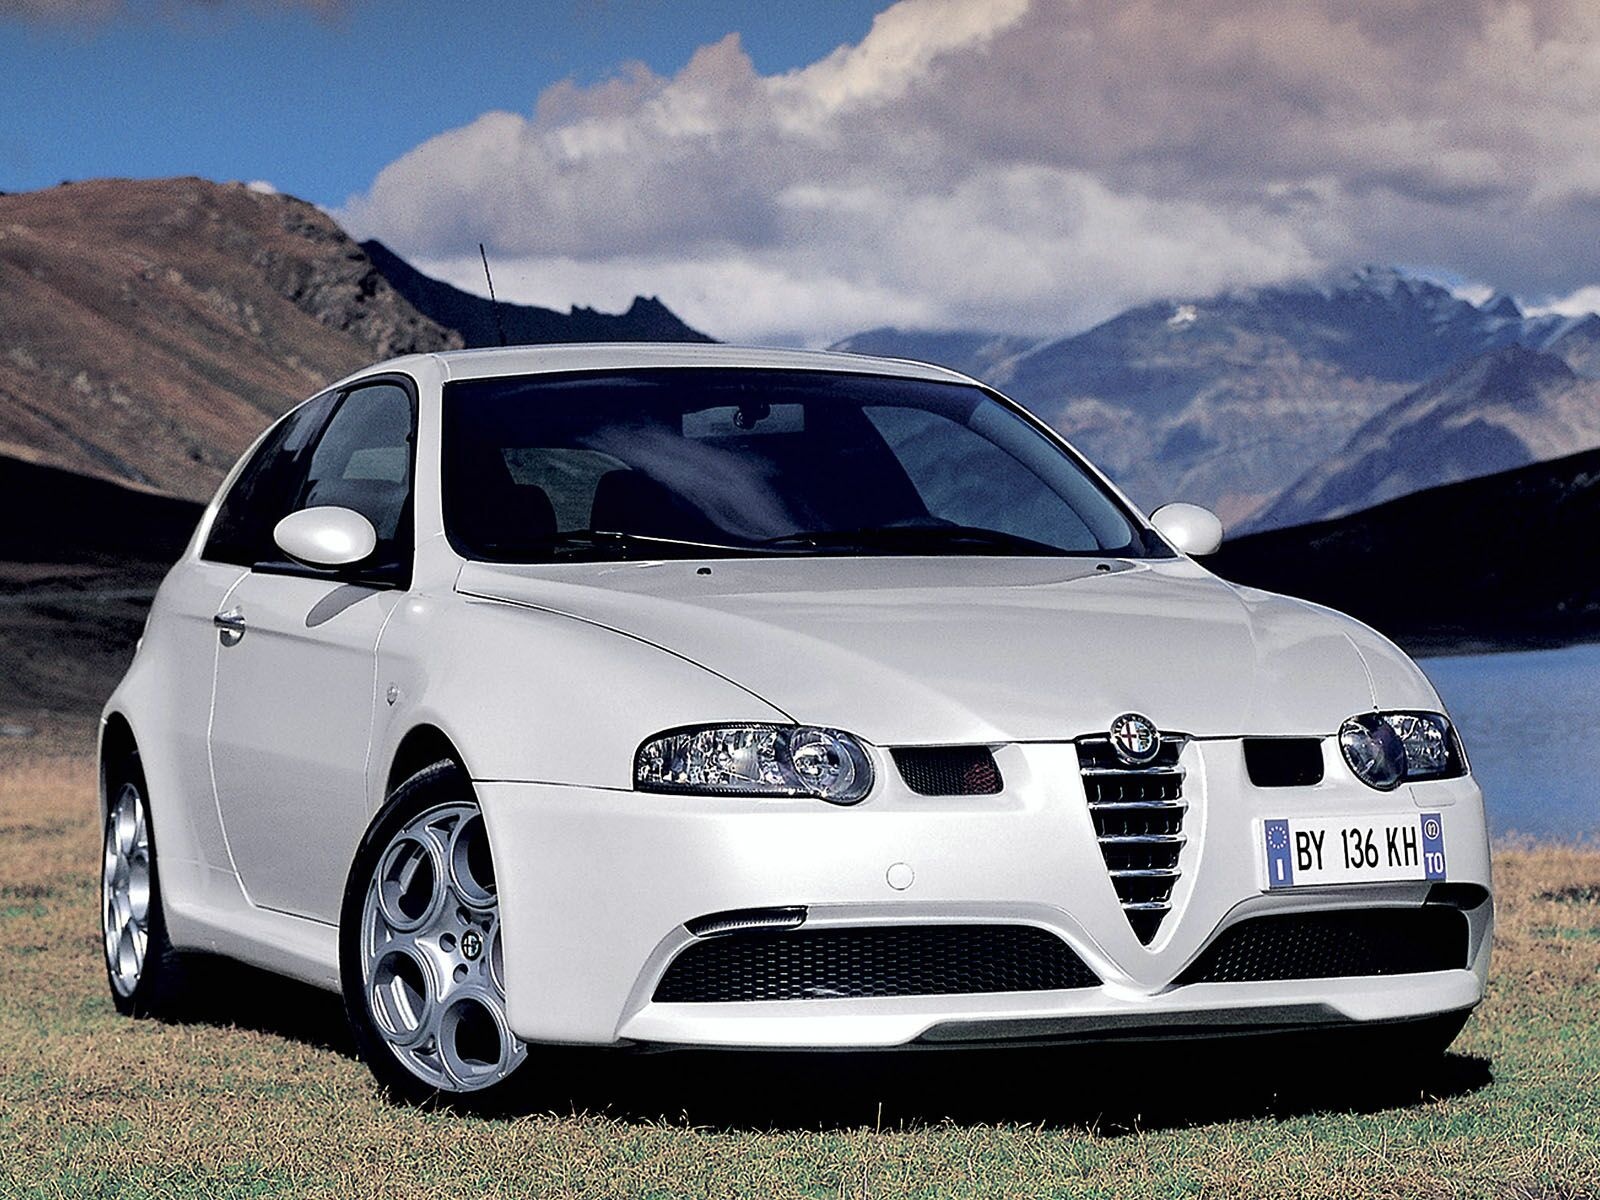 2007 Alfa Romeo 147: Prices, Reviews & Pictures - CarGurus